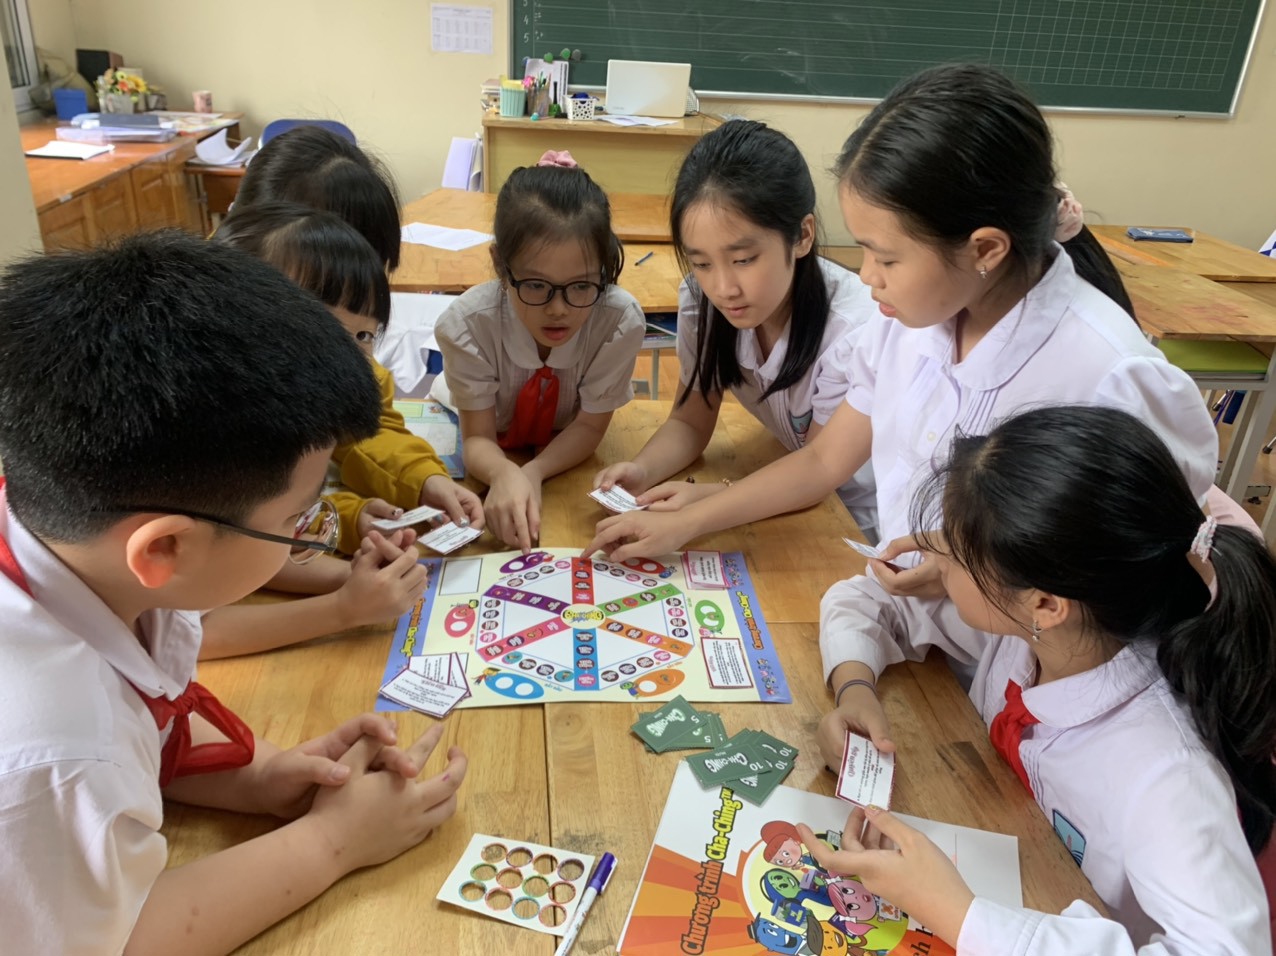 Giáo trình Cha-Ching được xây dựng cho các em học sinh trên phương pháp tích hợp “học mà chơi, chơi mà học”.